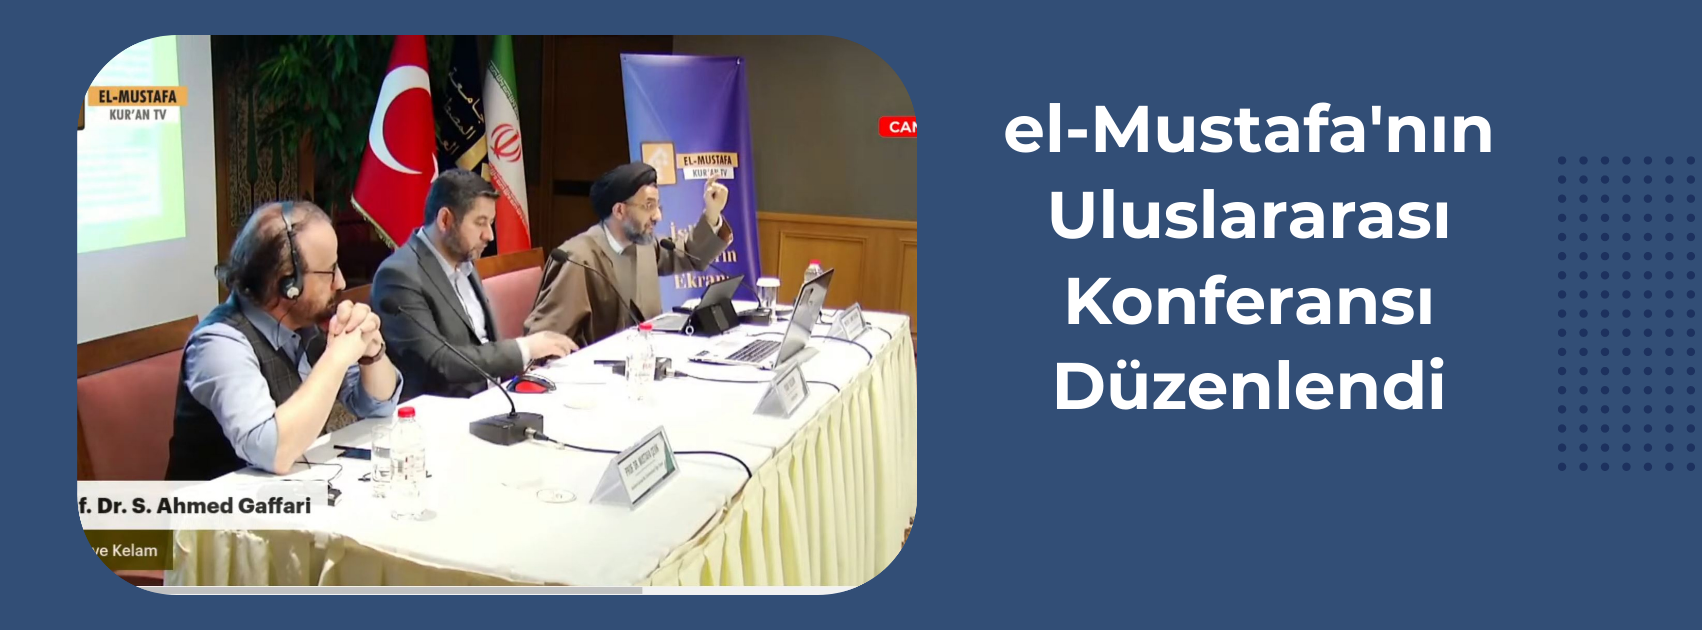 el-Mustafa'nın Uluslararası Konferansı Düzenlendi